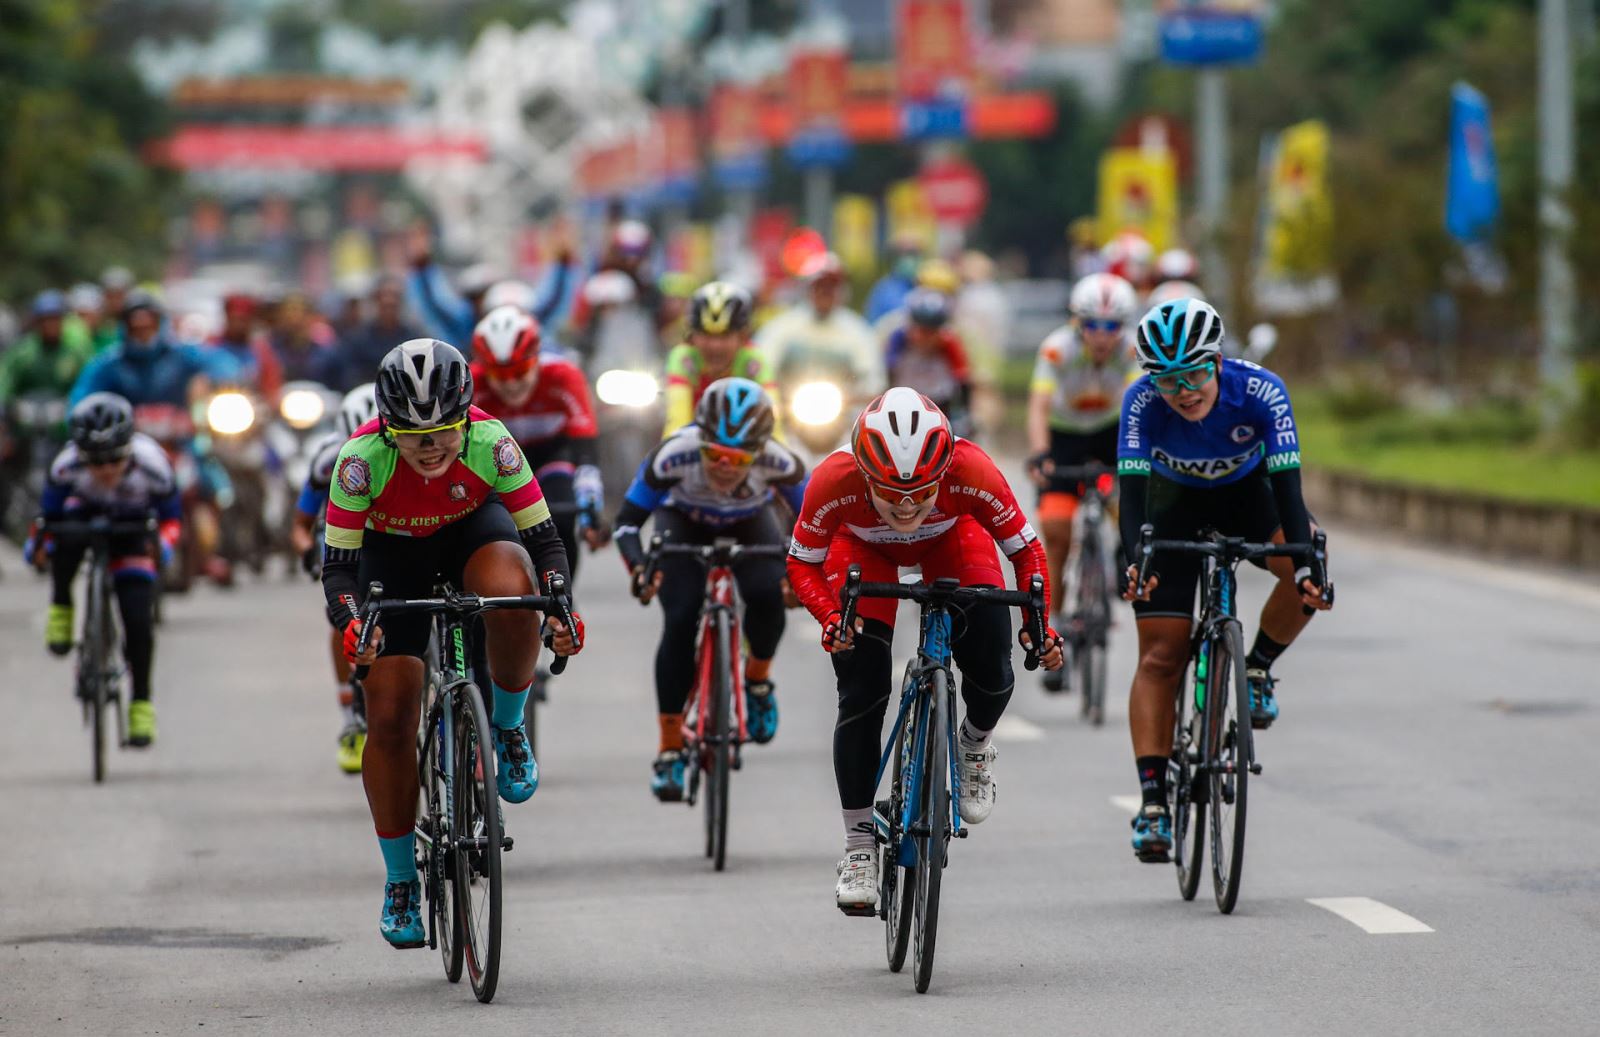 Hãy xem những khoảnh khắc gay cấn nhất của giải vô địch xe đạp với những tay đua tài ba định giành chiến thắng. Những pha đua nghẹt thở, đầy kịch tính sẽ kéo bạn đến từng giây, từng phút.